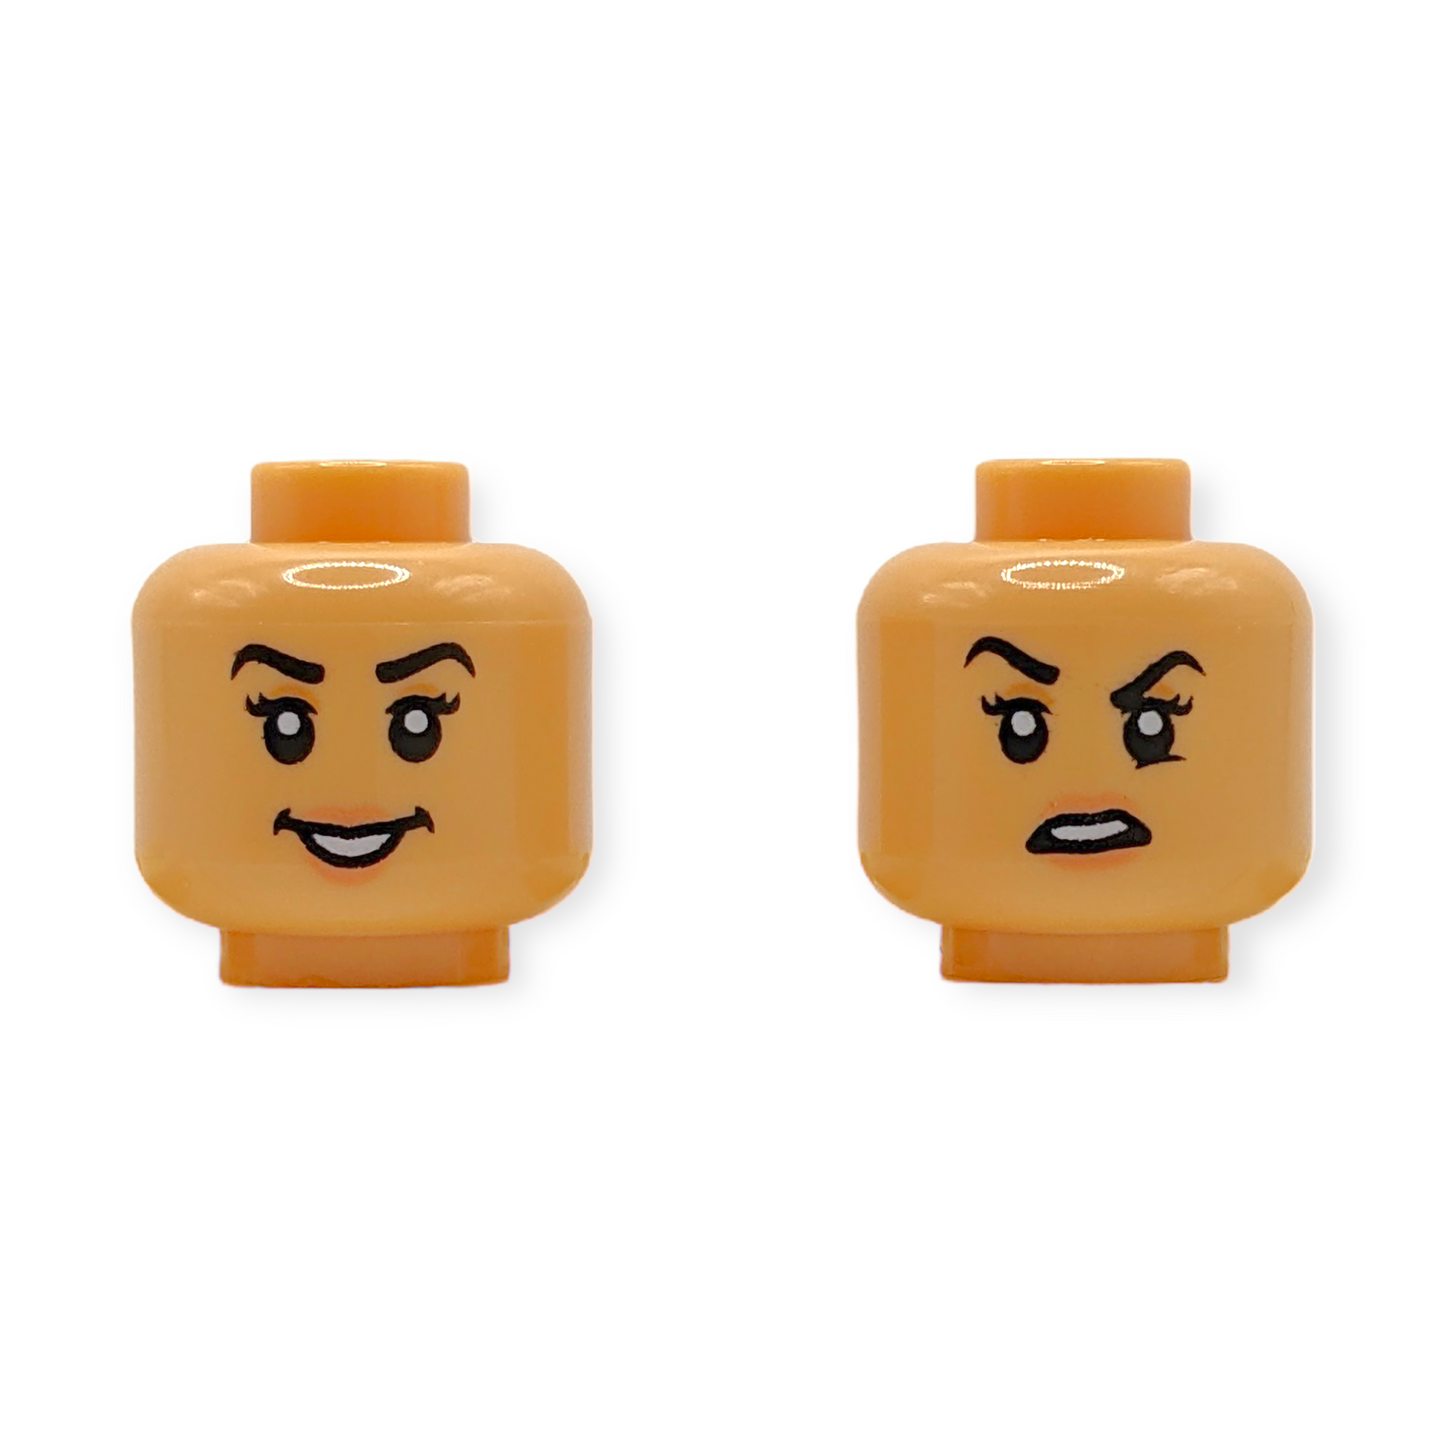 LEGO Head - 3874 Dual Sided Female Black Eyebrows